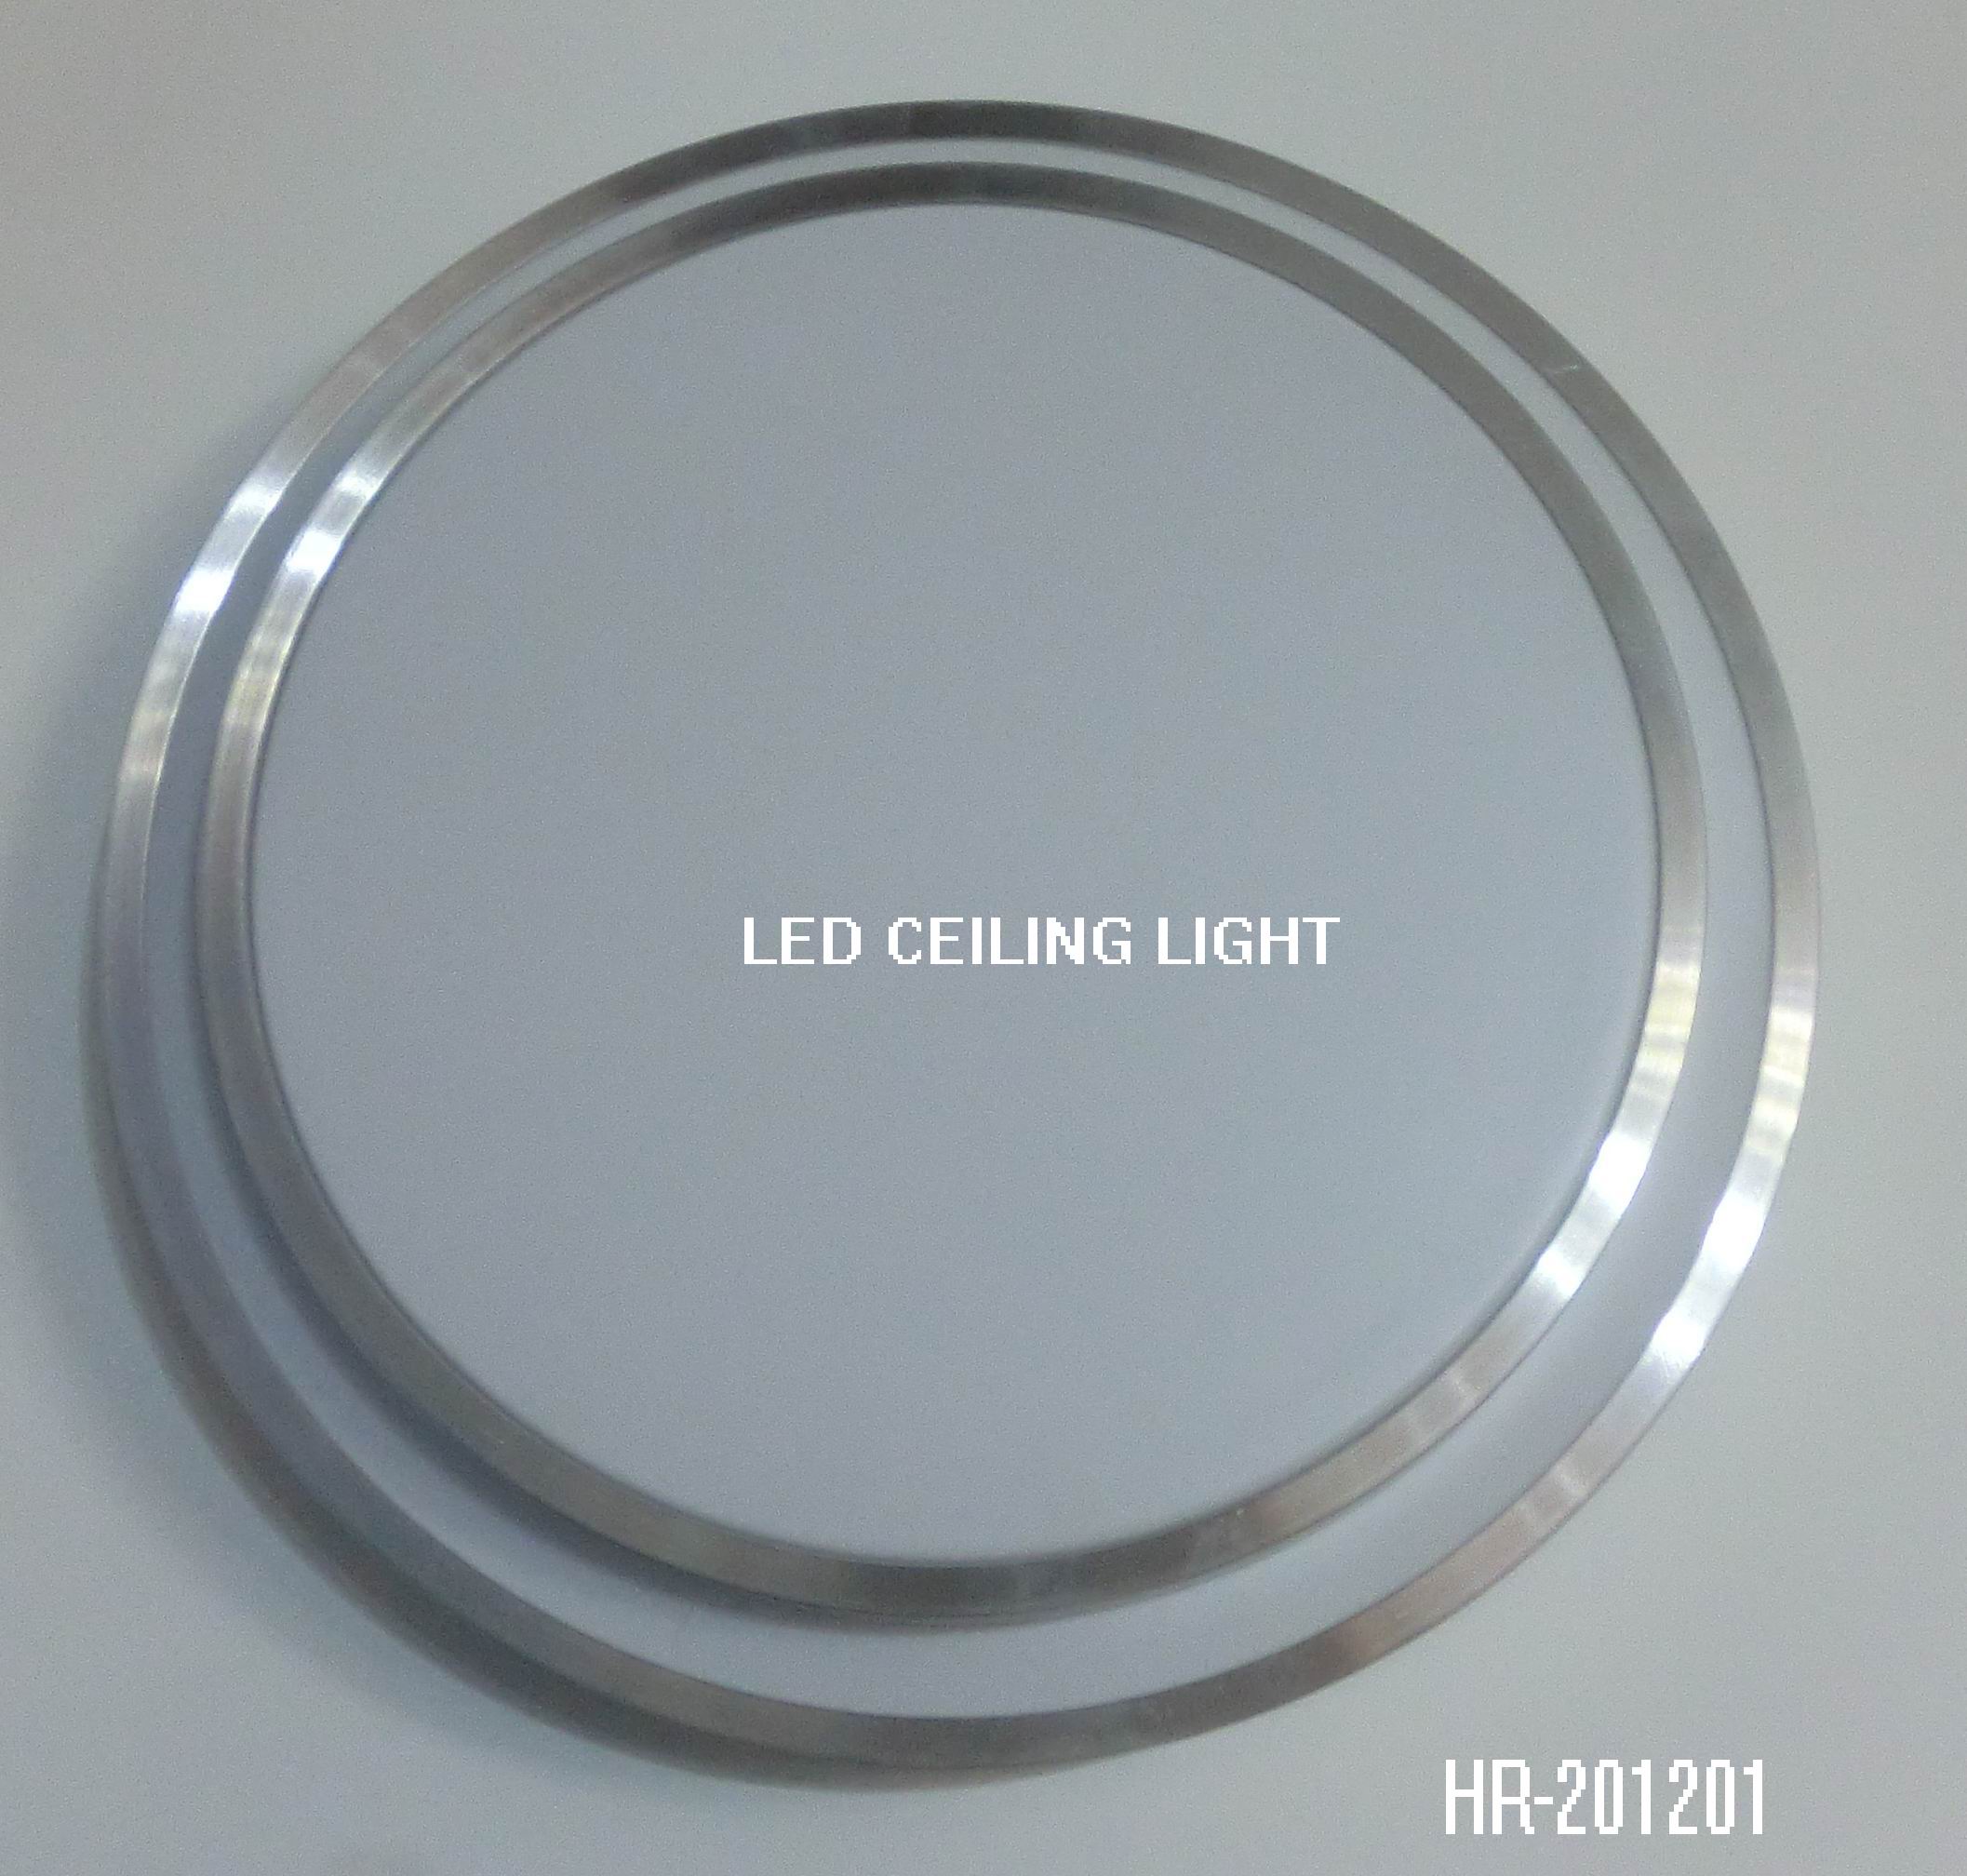 LED CEILING LIGHTSpec:Unit: